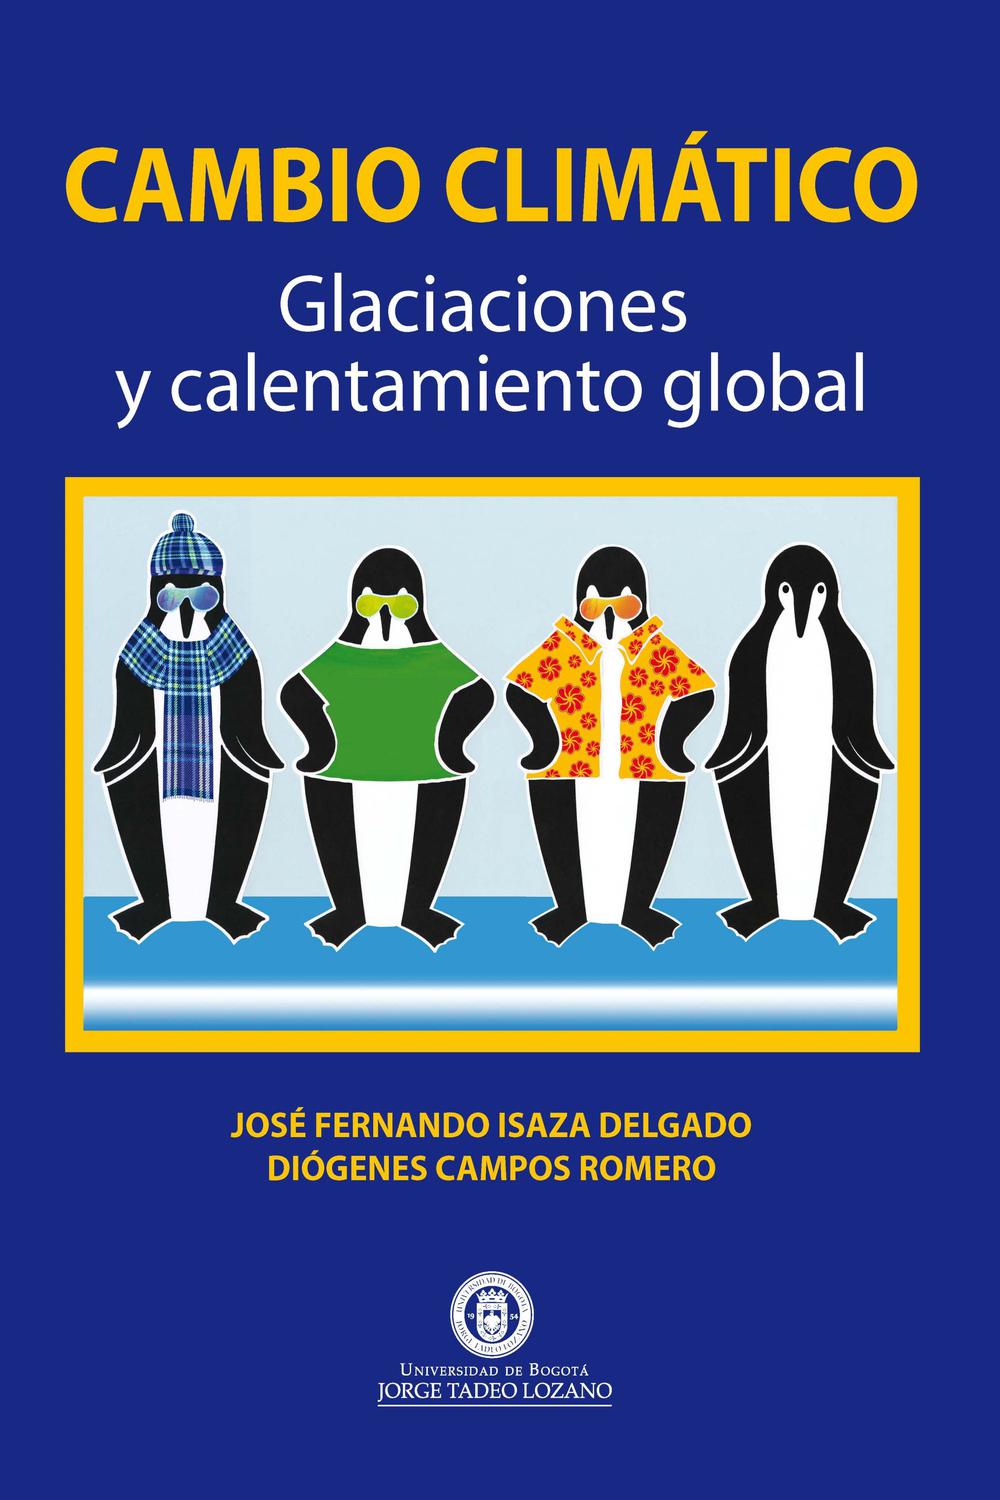 Cambio Climático. Glaciaciones y calentamiento global - José Fernando Isaza Delgado, Diógenes Campos Romero